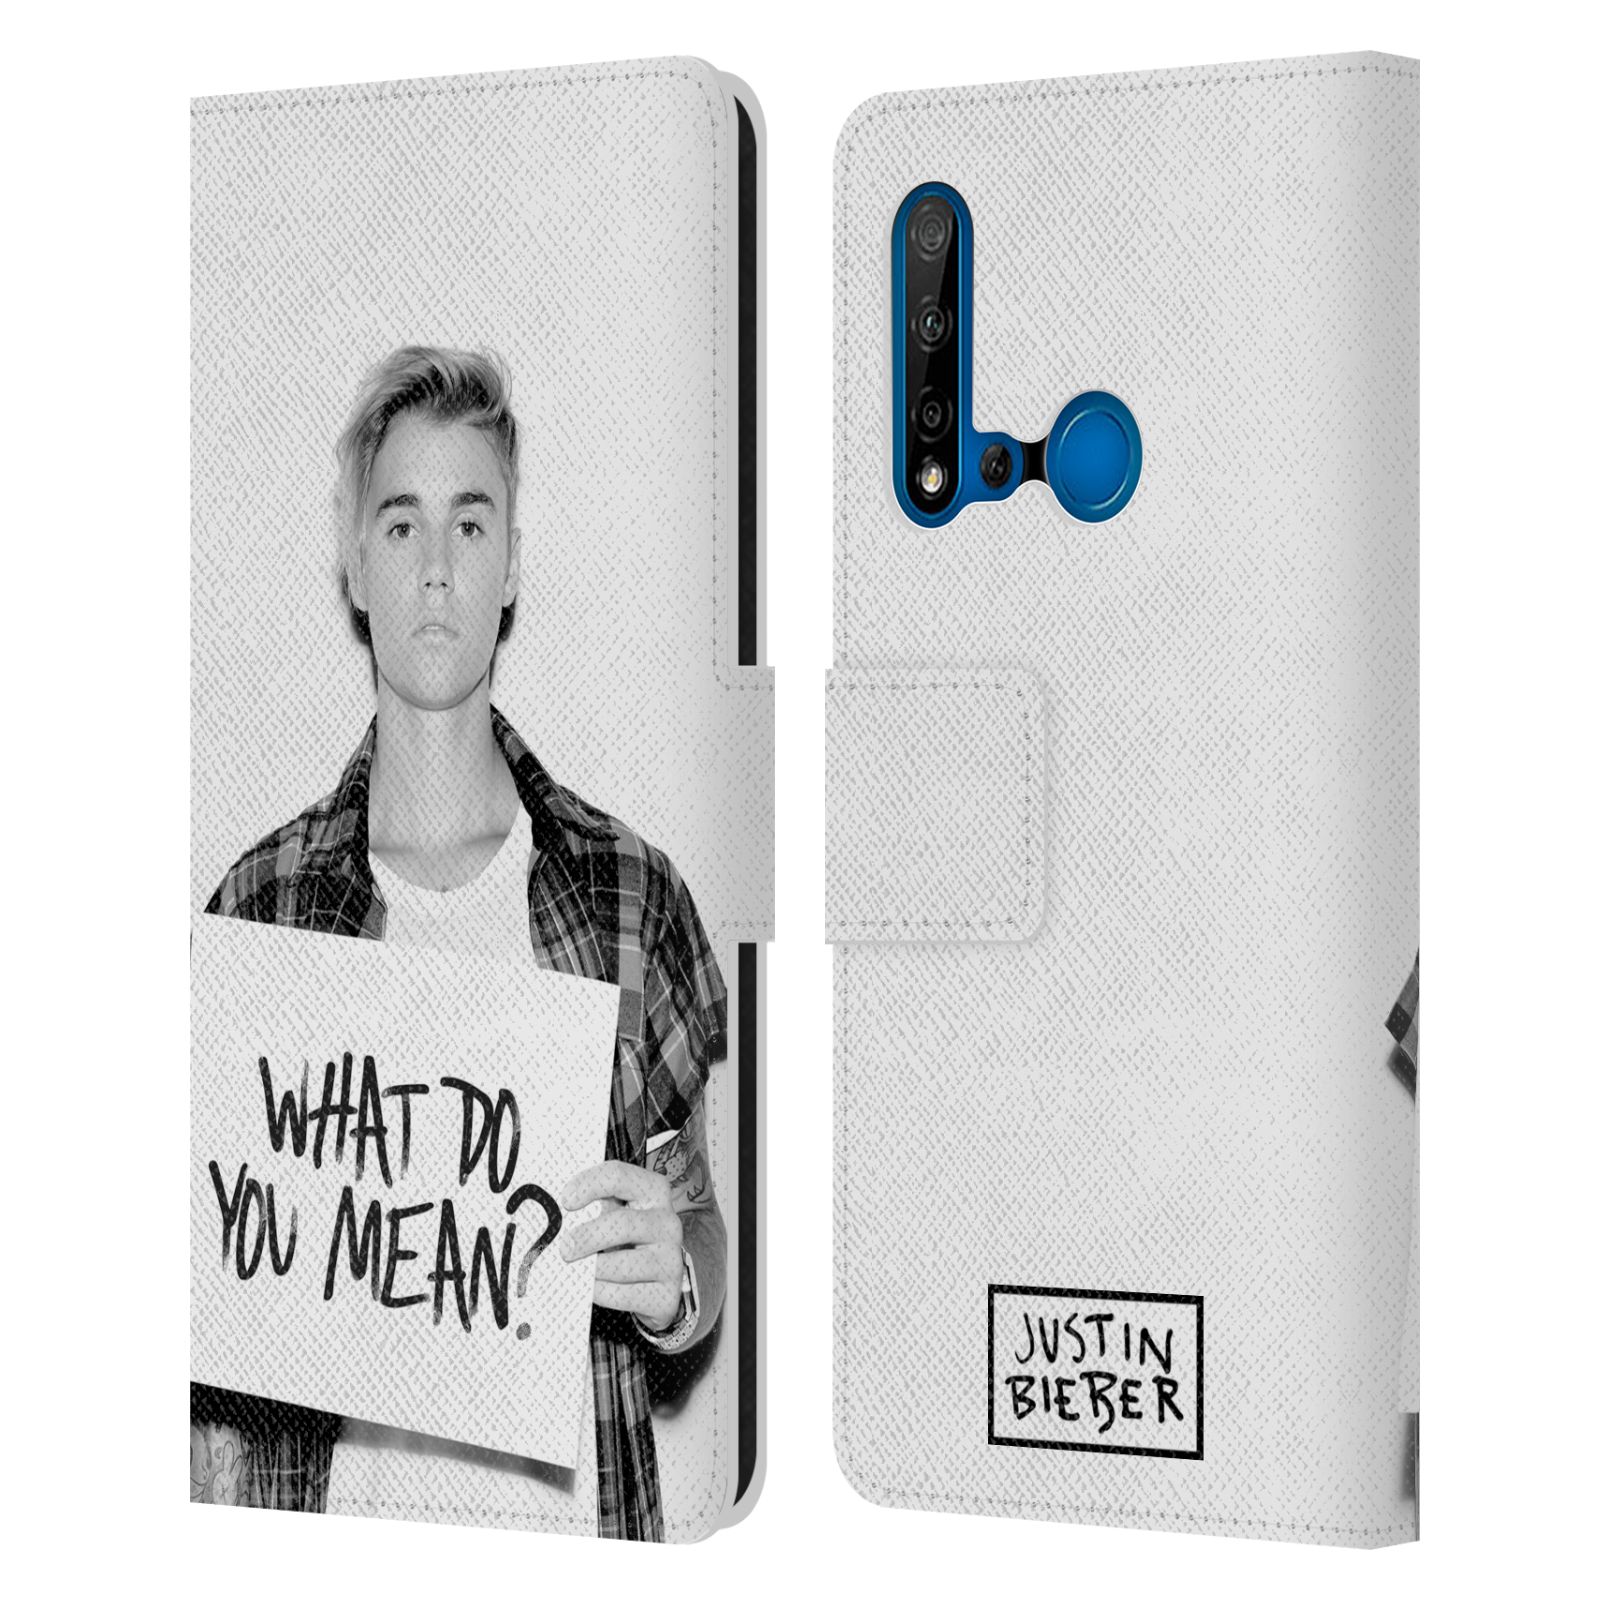 Pouzdro na mobil Huawei P20 LITE 2019 - Head Case - Justin Bieber - Foto What Do You Mean